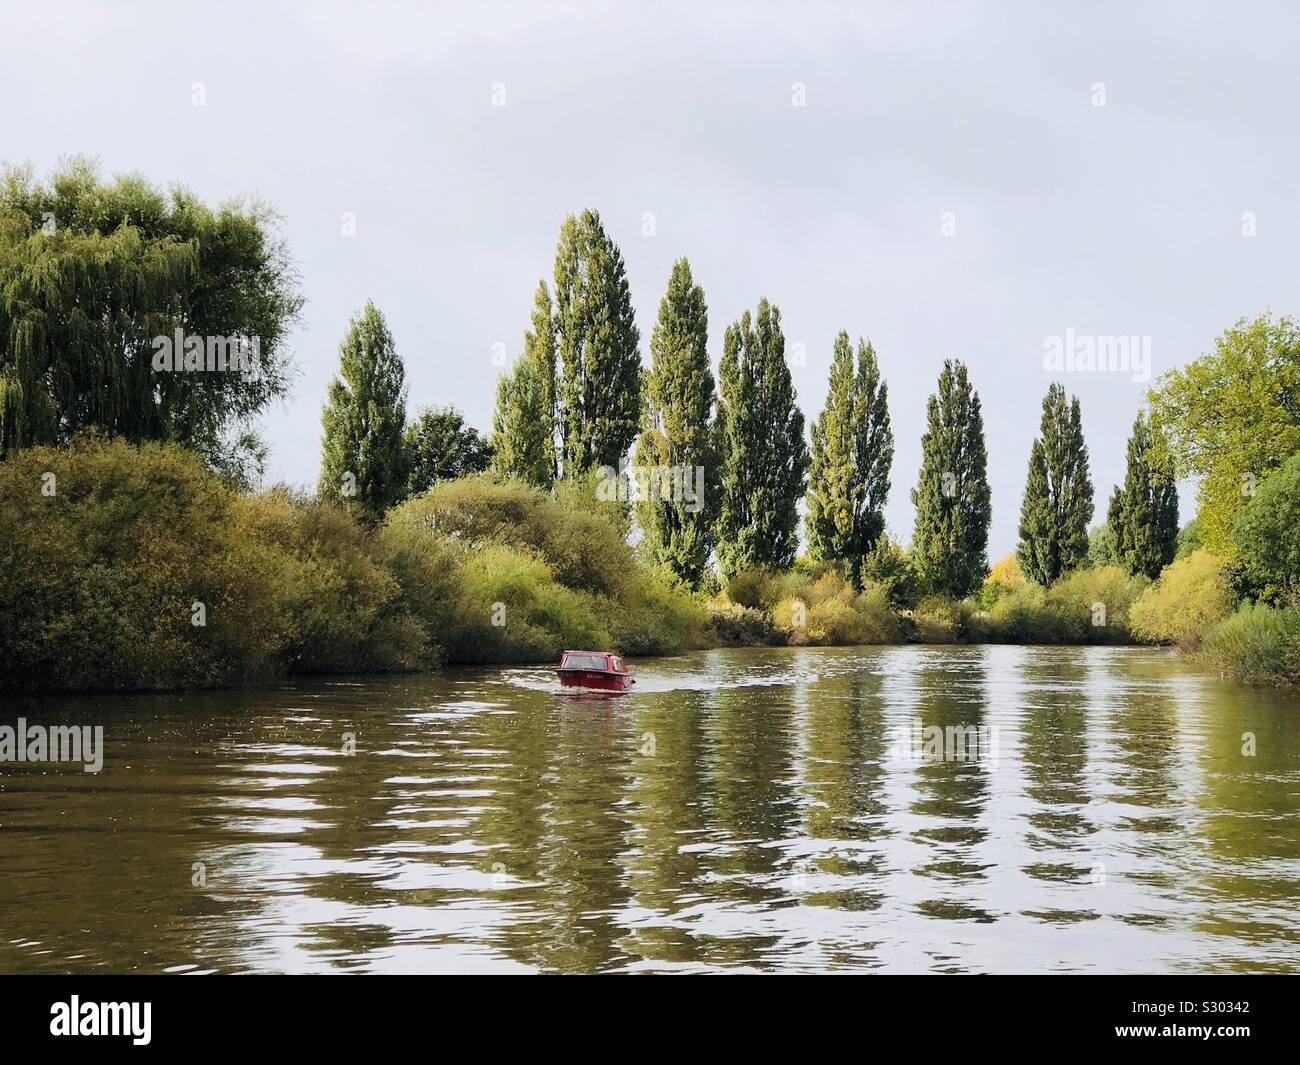 El barco rojo bajando por un río con una línea de álamos reflejado Foto de stock